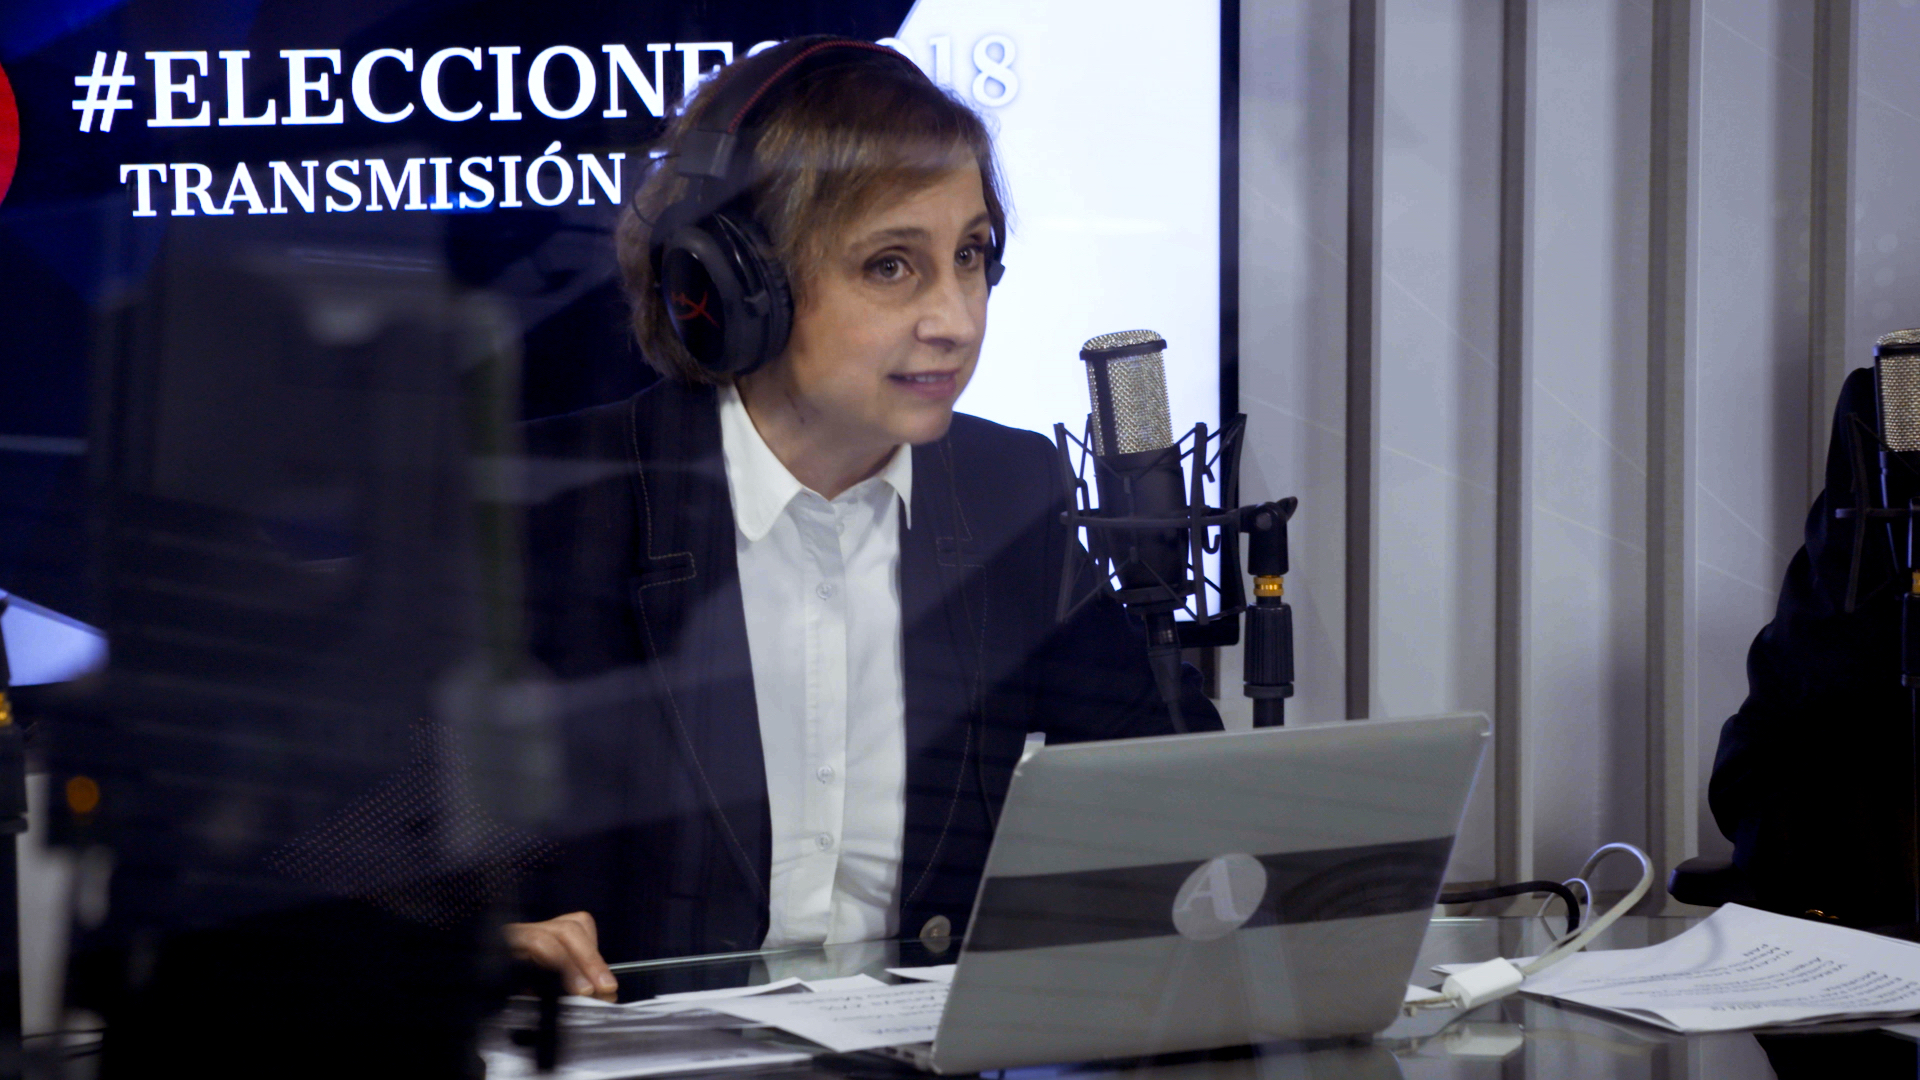 La journaliste mexicaine Carmen Aristegui est l’une des principales voix d’opposition de son pays.